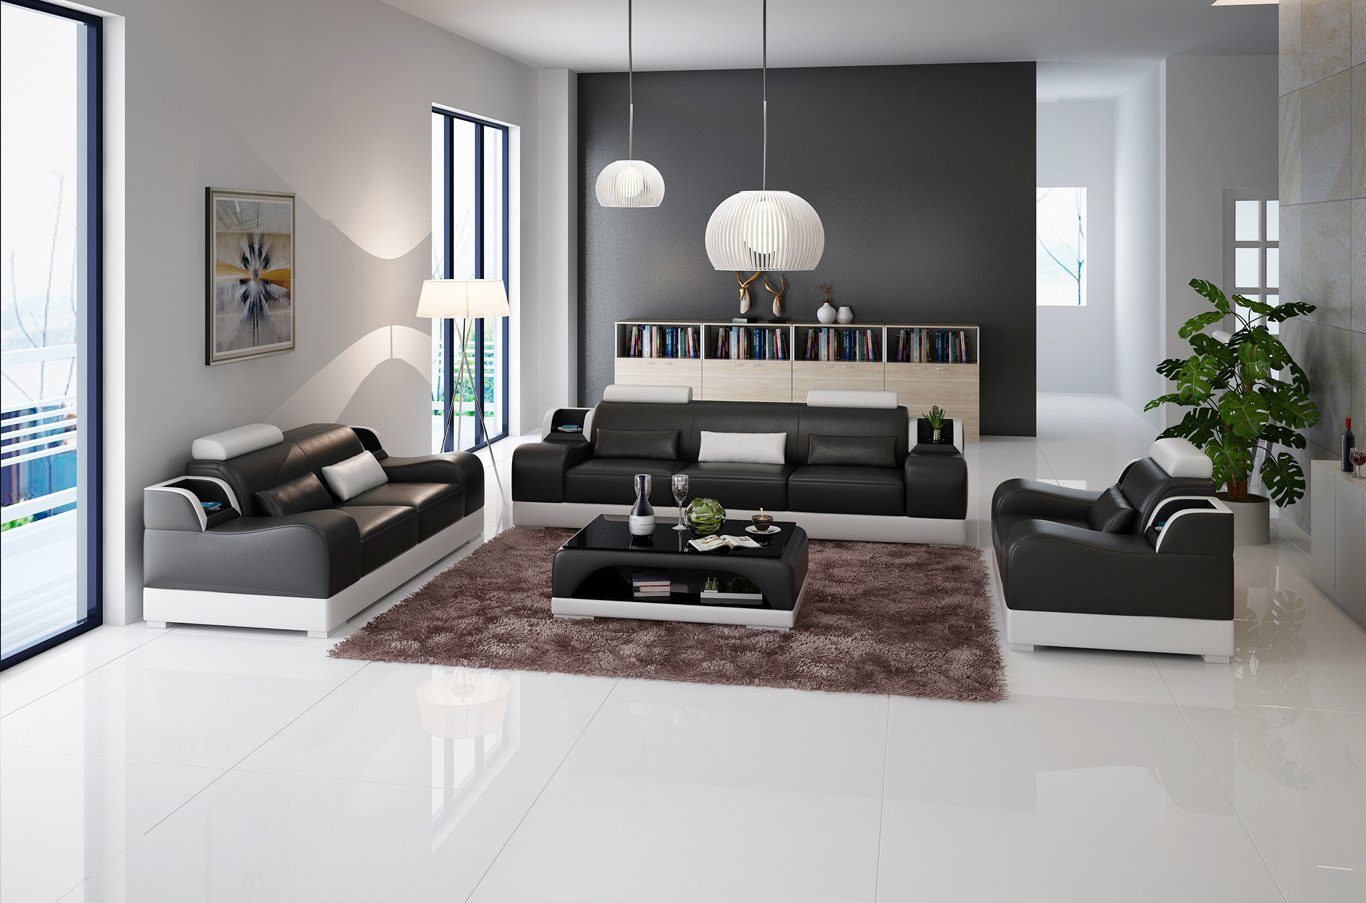 JVmoebel Sofa 3+2+2 Sitzer Set Design Sofa Polster Couchen Couch Modern Luxus Neu, Made in Europe Schwarz/Weiß